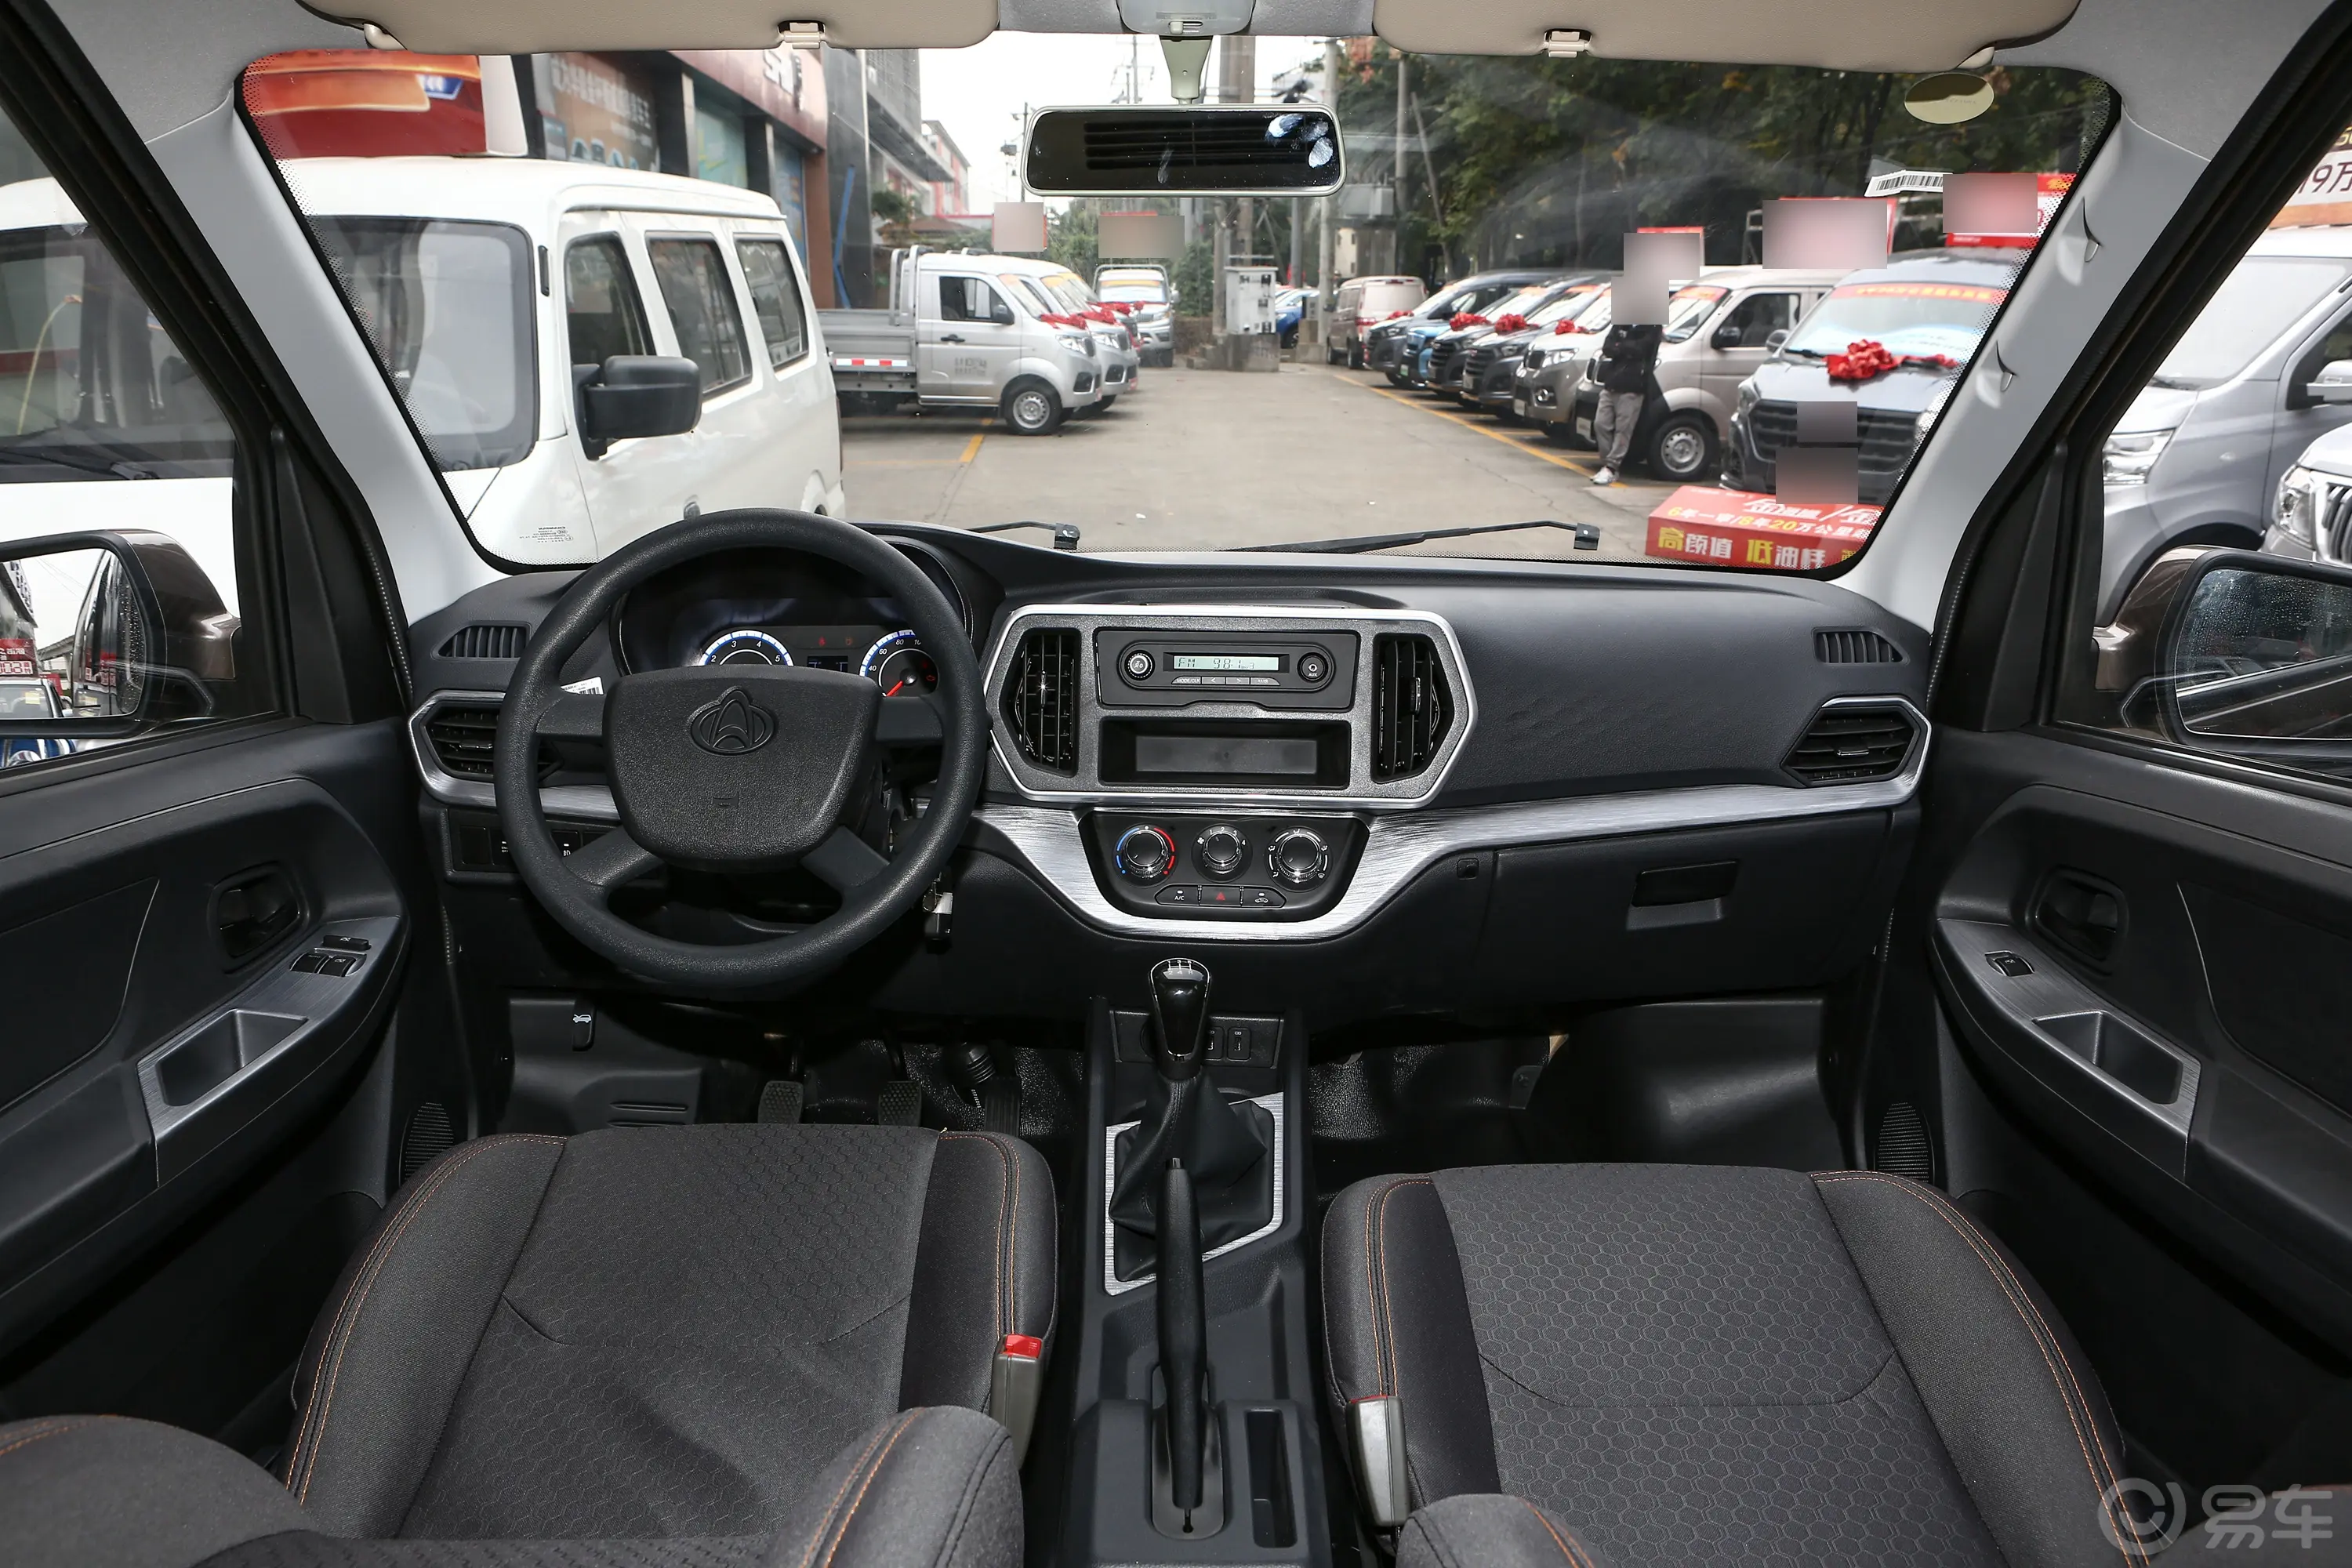 睿行M601.6L 客车舒适型 CNG音响和品牌